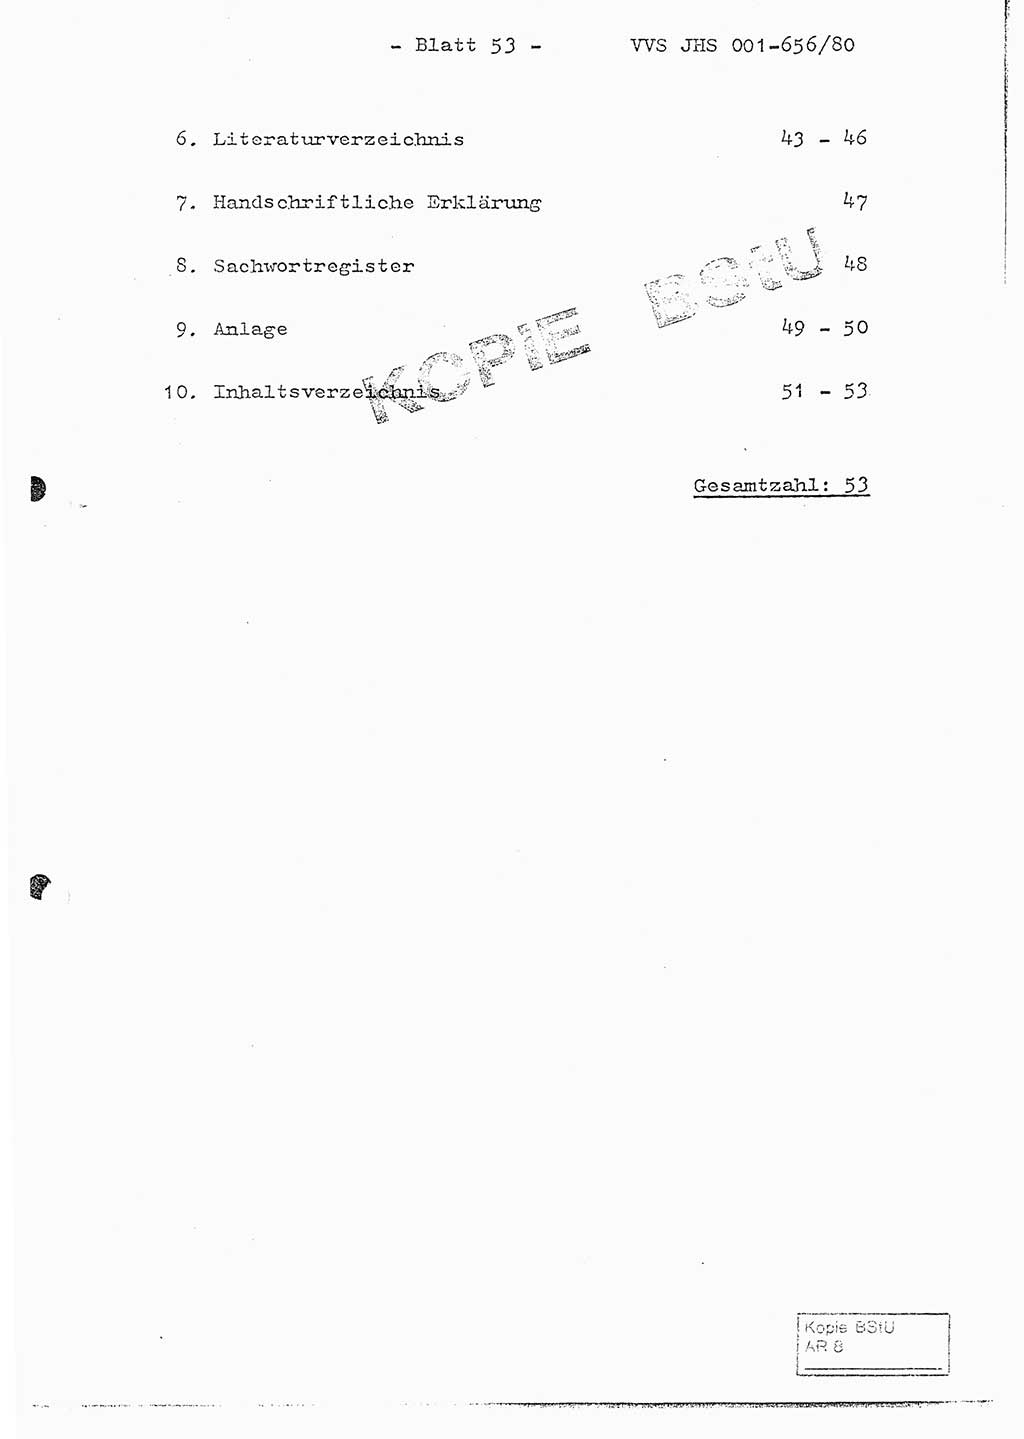 Fachschulabschlußarbeit Unterleutnant Christian Kätzel (Abt. ⅩⅣ), Ministerium für Staatssicherheit (MfS) [Deutsche Demokratische Republik (DDR)], Juristische Hochschule (JHS), Vertrauliche Verschlußsache (VVS) 001-656/80, Potsdam 1980, Blatt 53 (FS-Abschl.-Arb. MfS DDR JHS VVS 001-656/80 1980, Bl. 53)